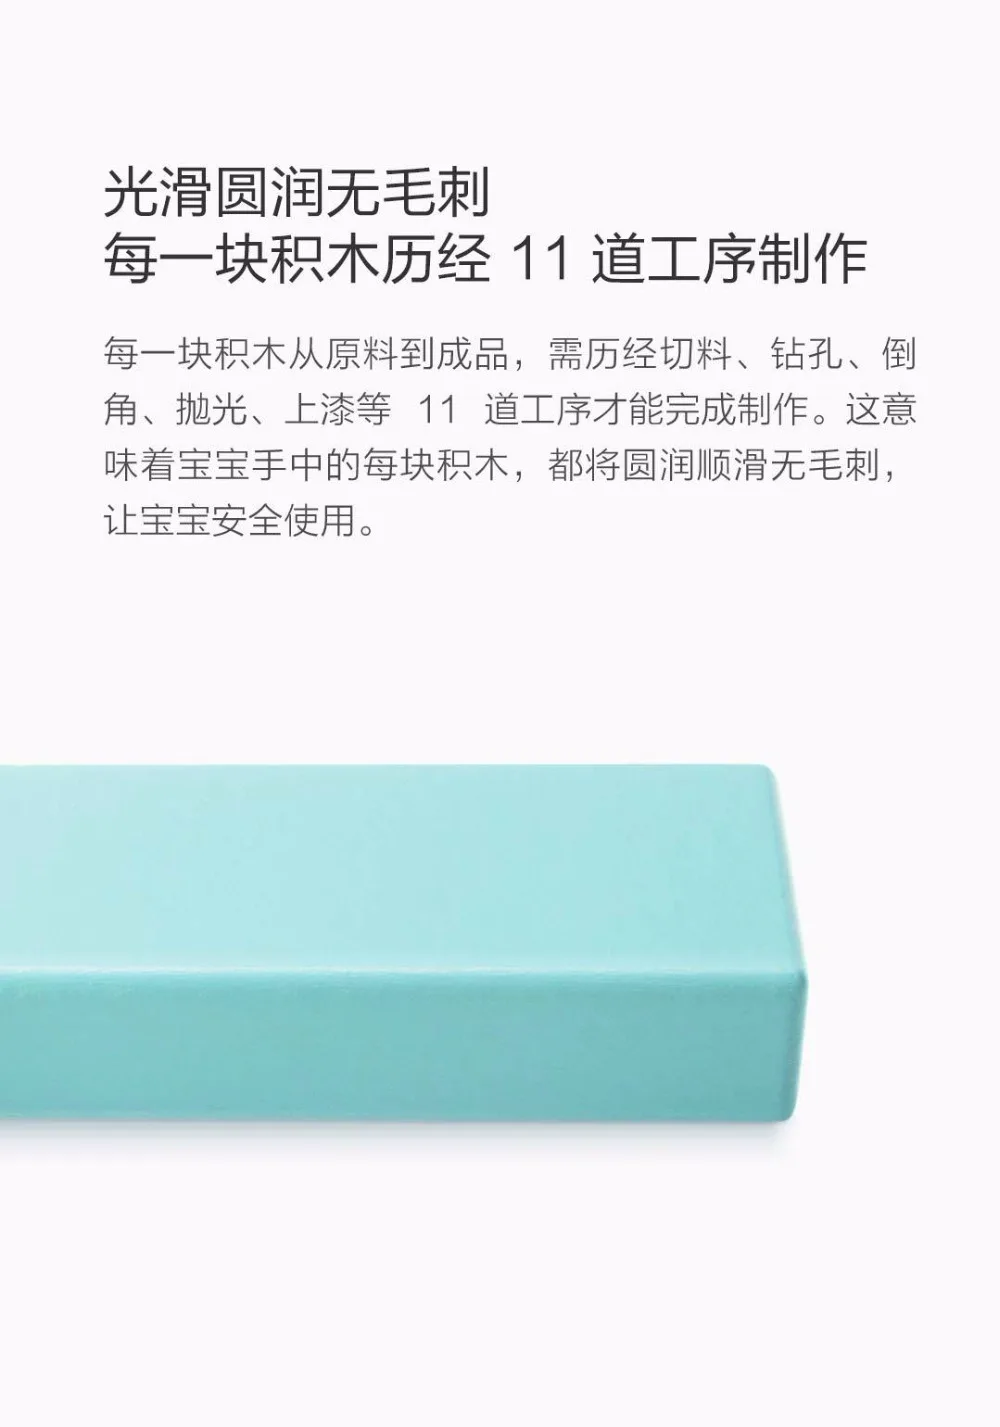 Xiaomi Bewa 80 шт. детские развивающие строительные блоки экологические Развивающие детские цифровые игрушка деревянные кубики